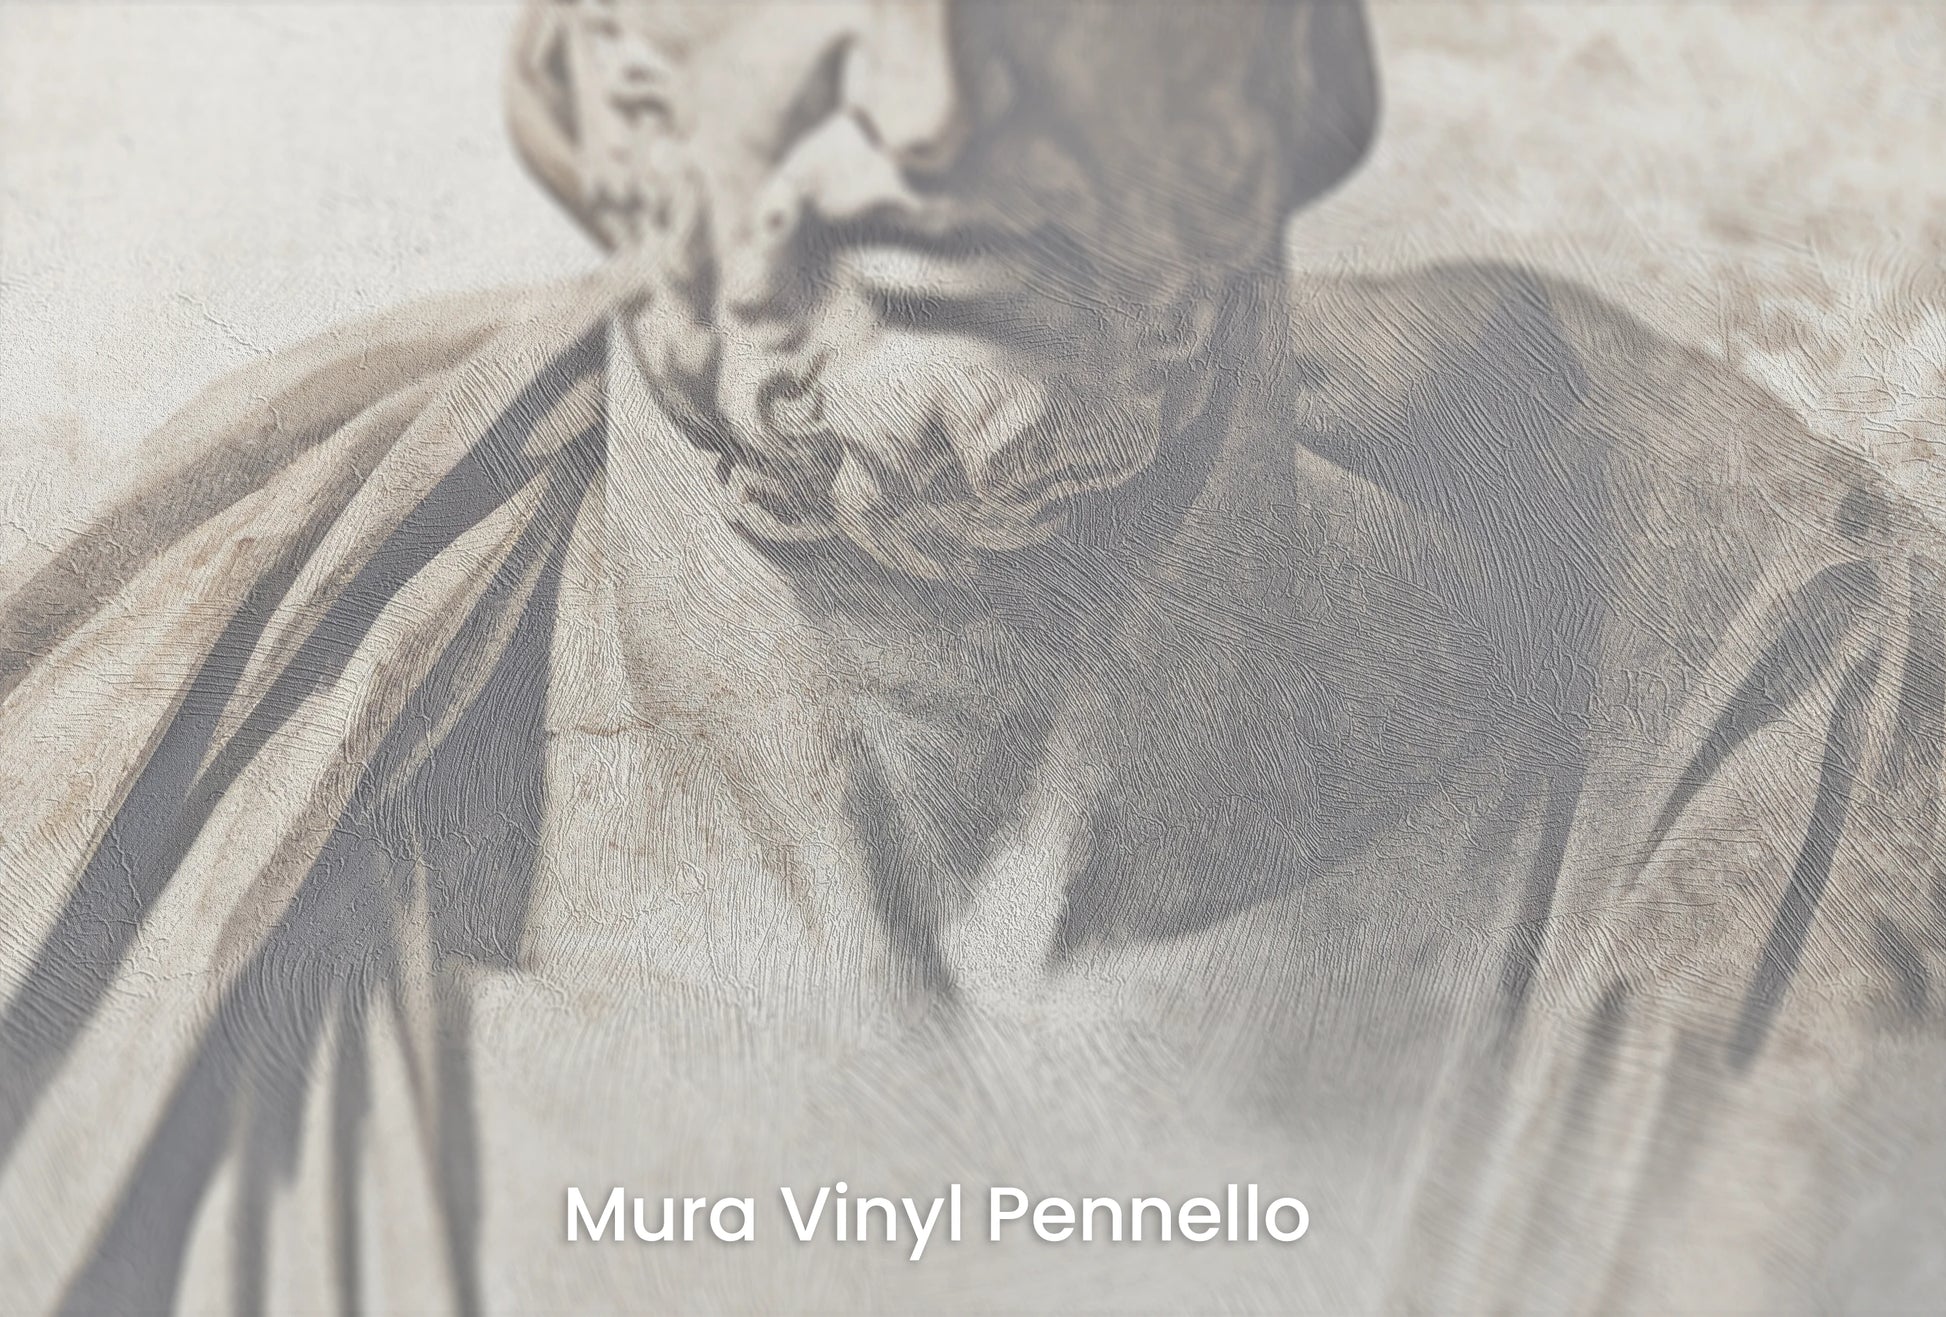 Zbliżenie na artystyczną fototapetę o nazwie Thoughtful Heraclitus na podłożu Mura Vinyl Pennello - faktura pociągnięć pędzla malarskiego.